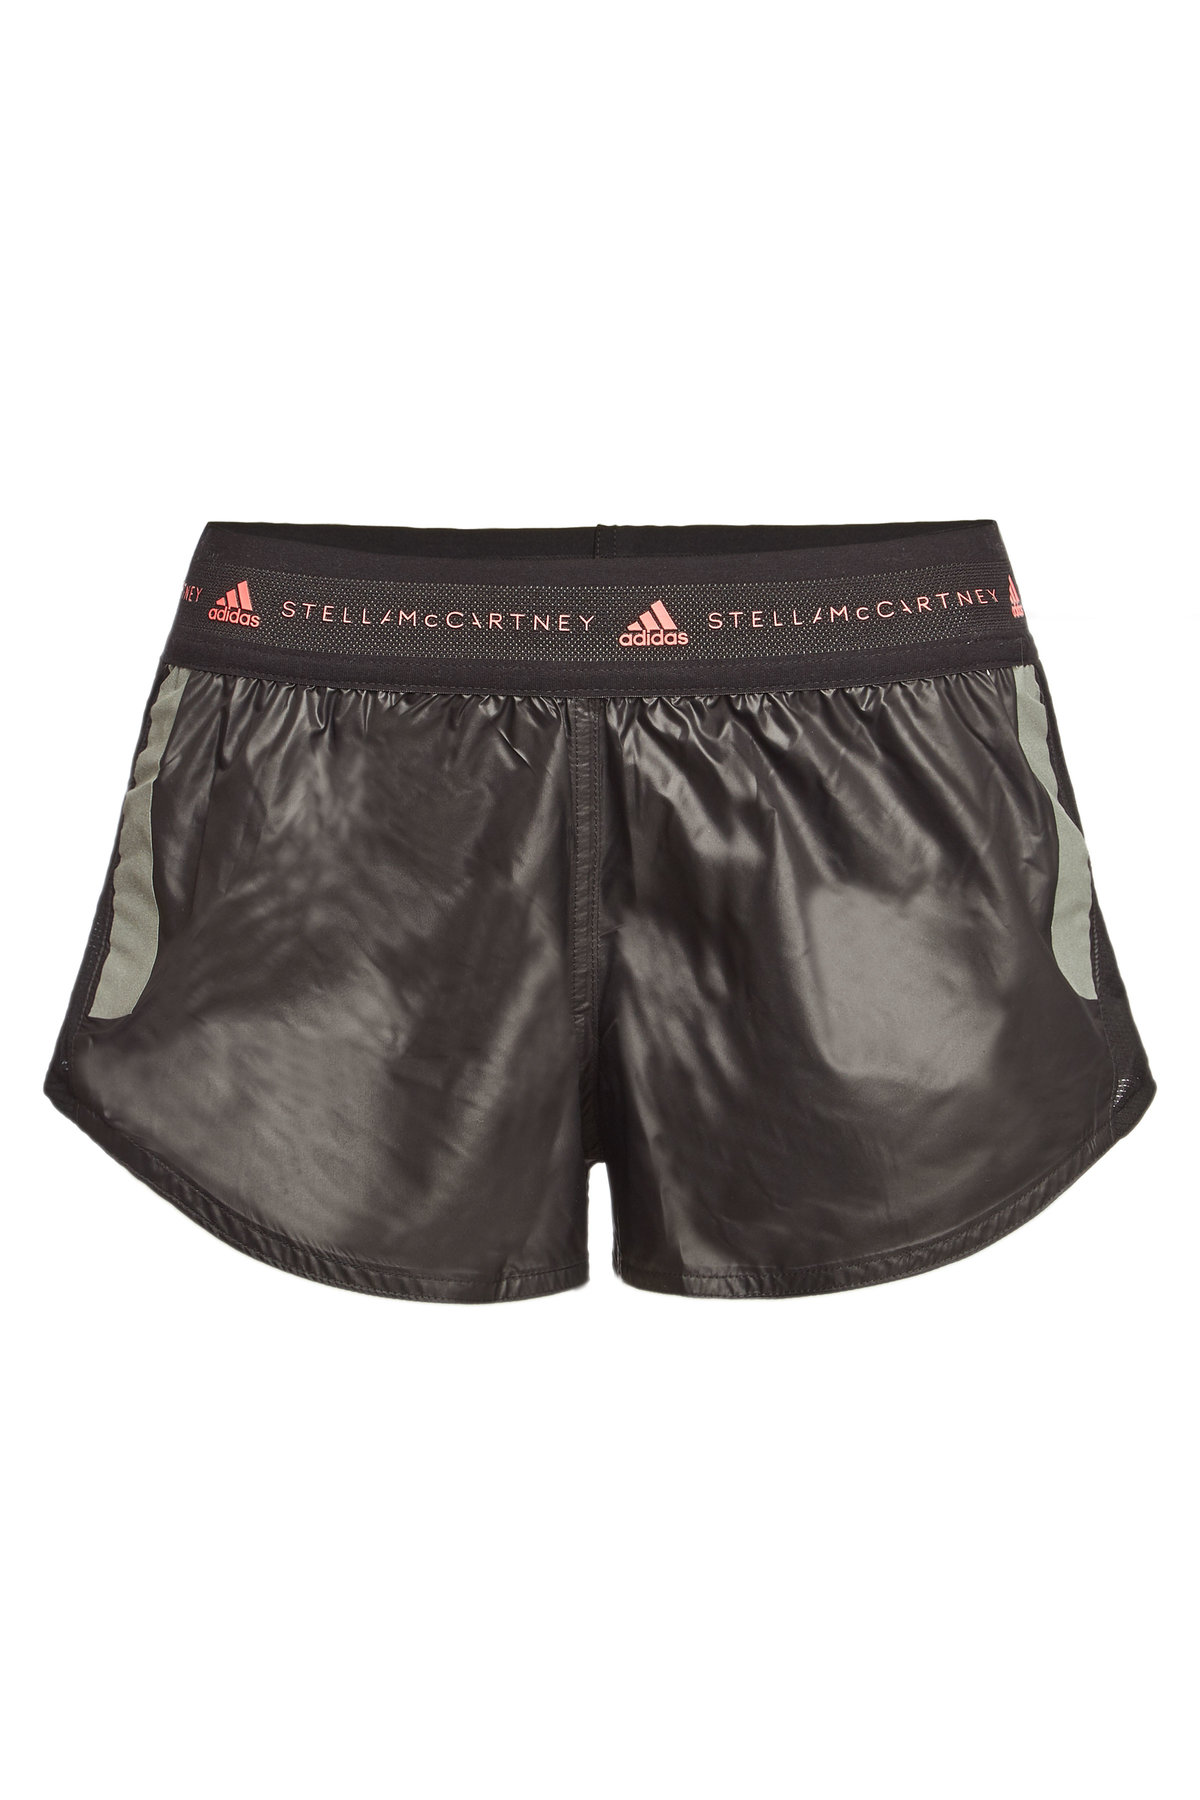 adidas by stella mccartney shorts